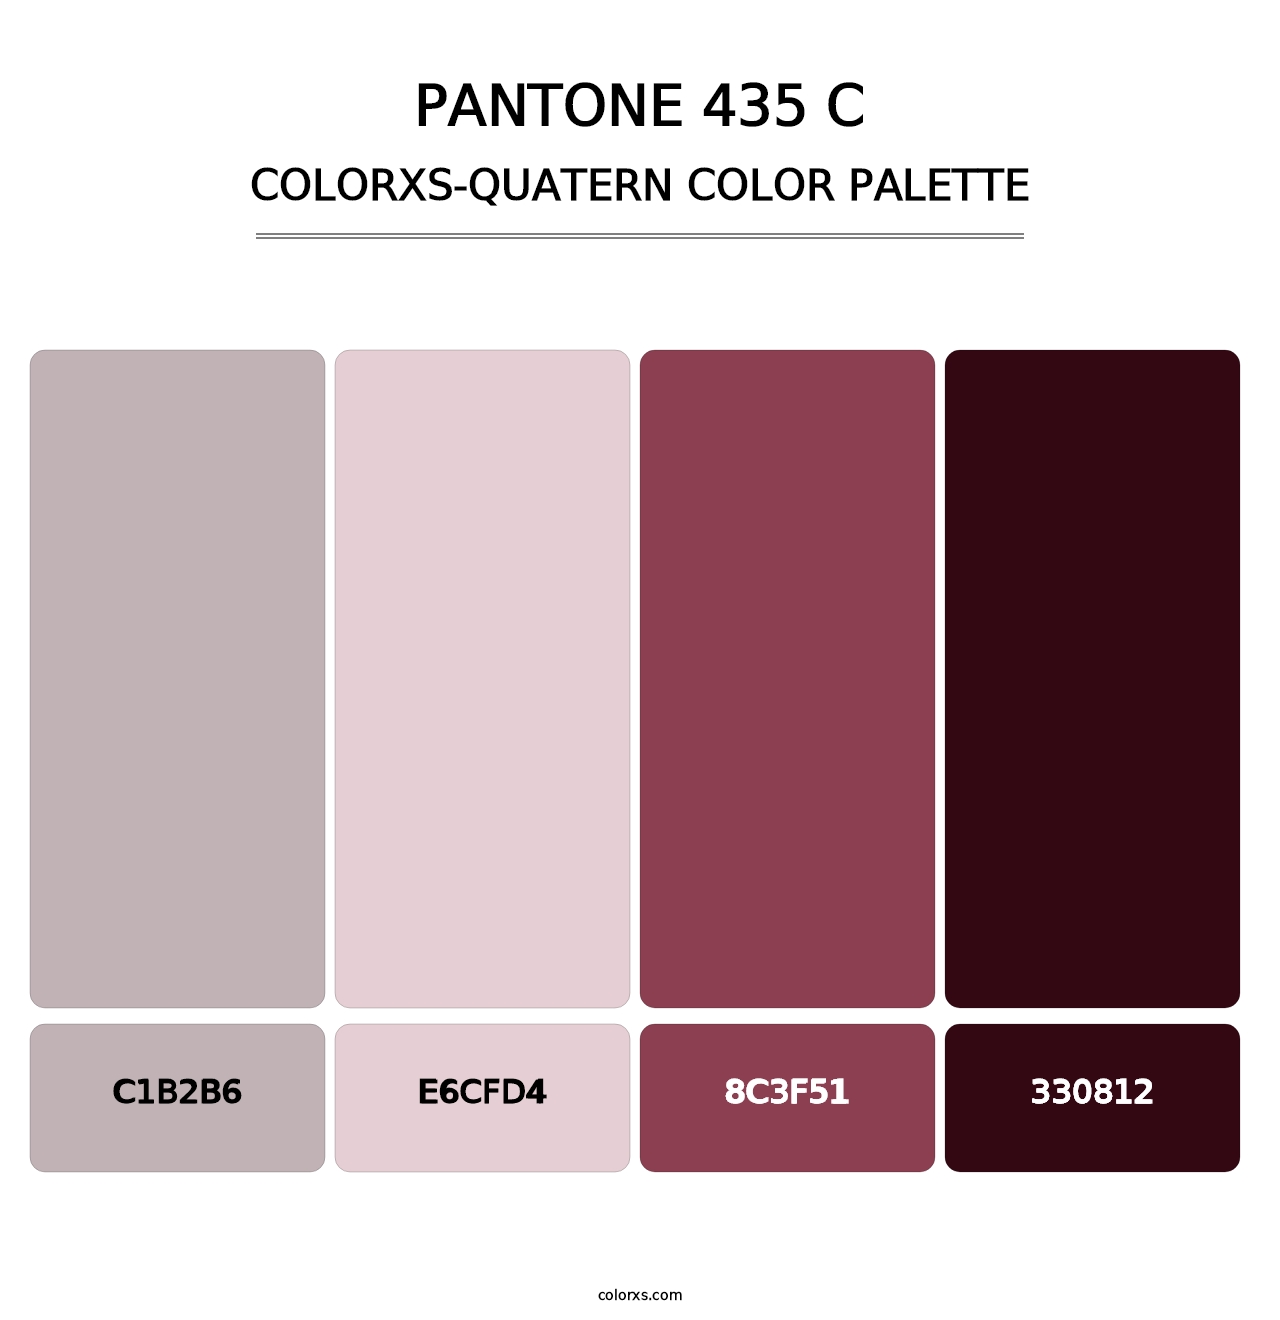 PANTONE 435 C - Colorxs Quatern Palette